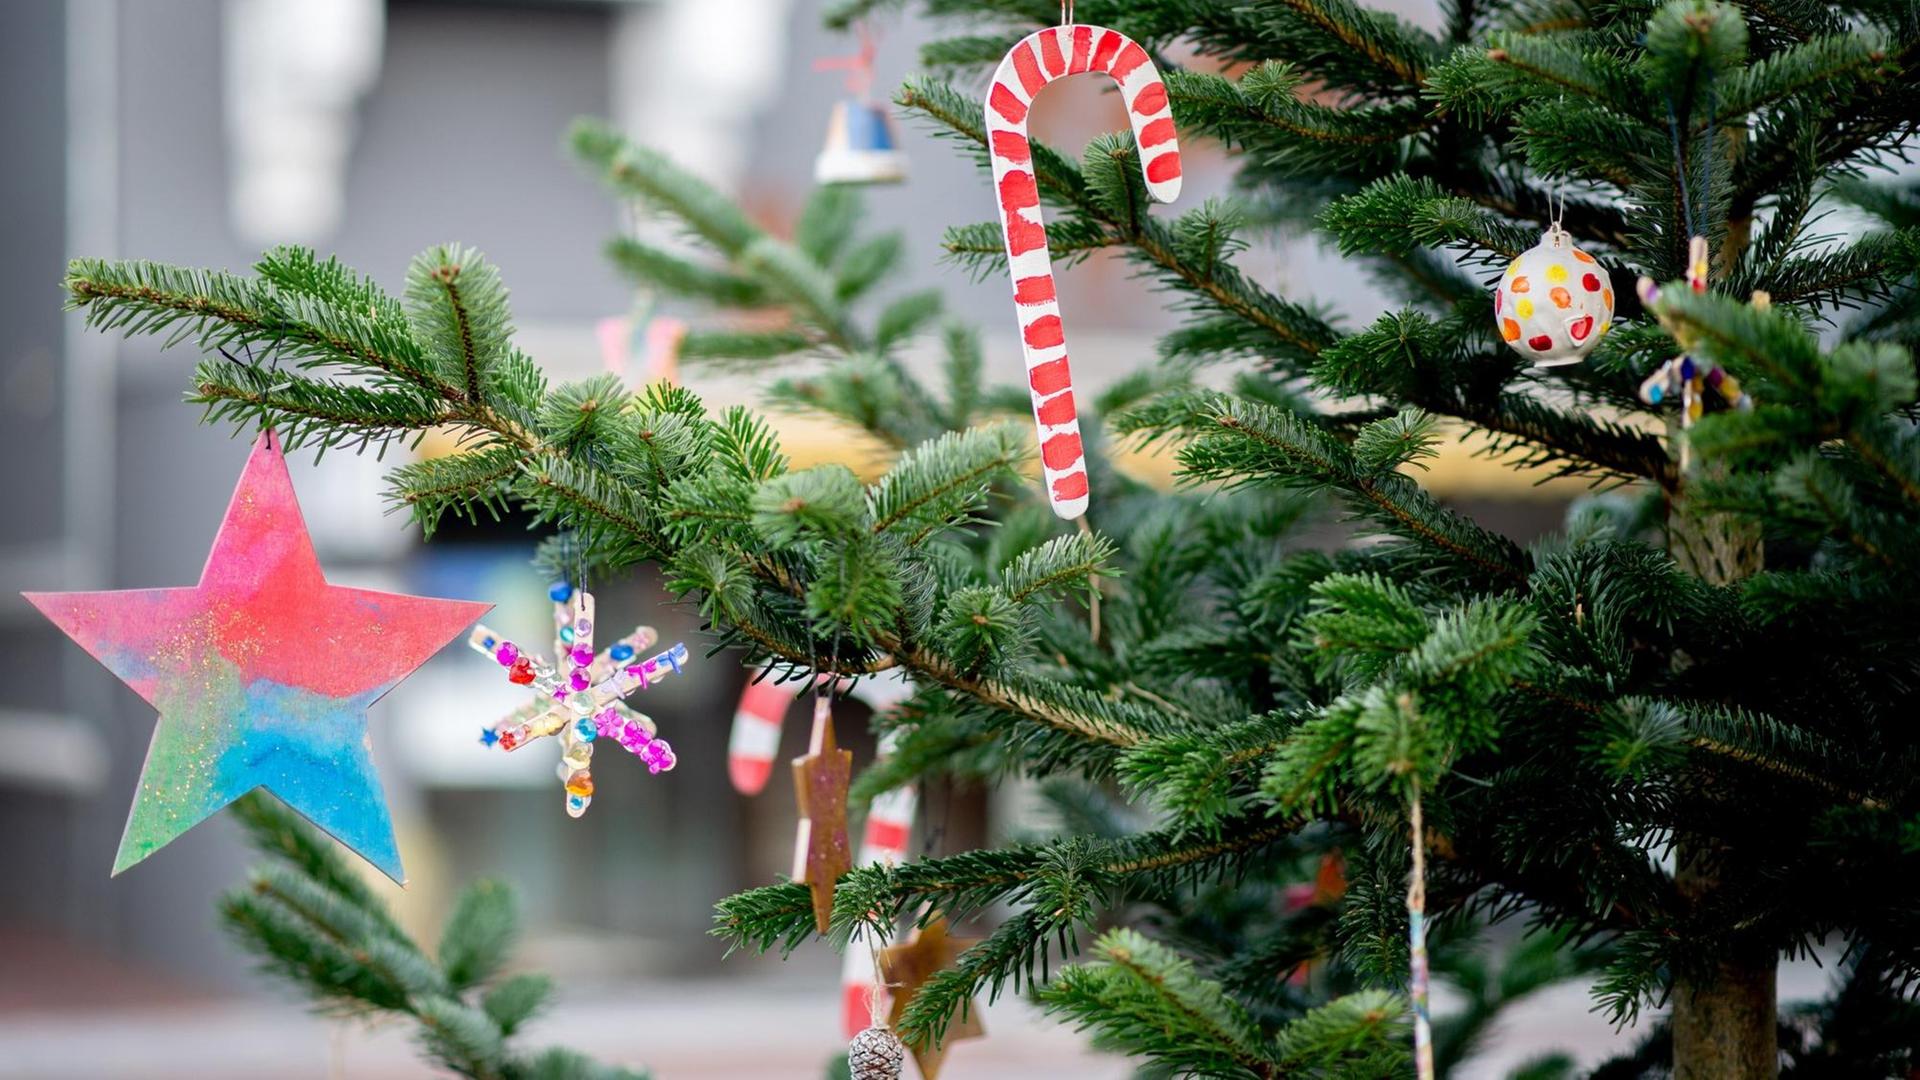 Weihnachtliche Dekoration mit Sternen hängt an einem Tannenbaum.